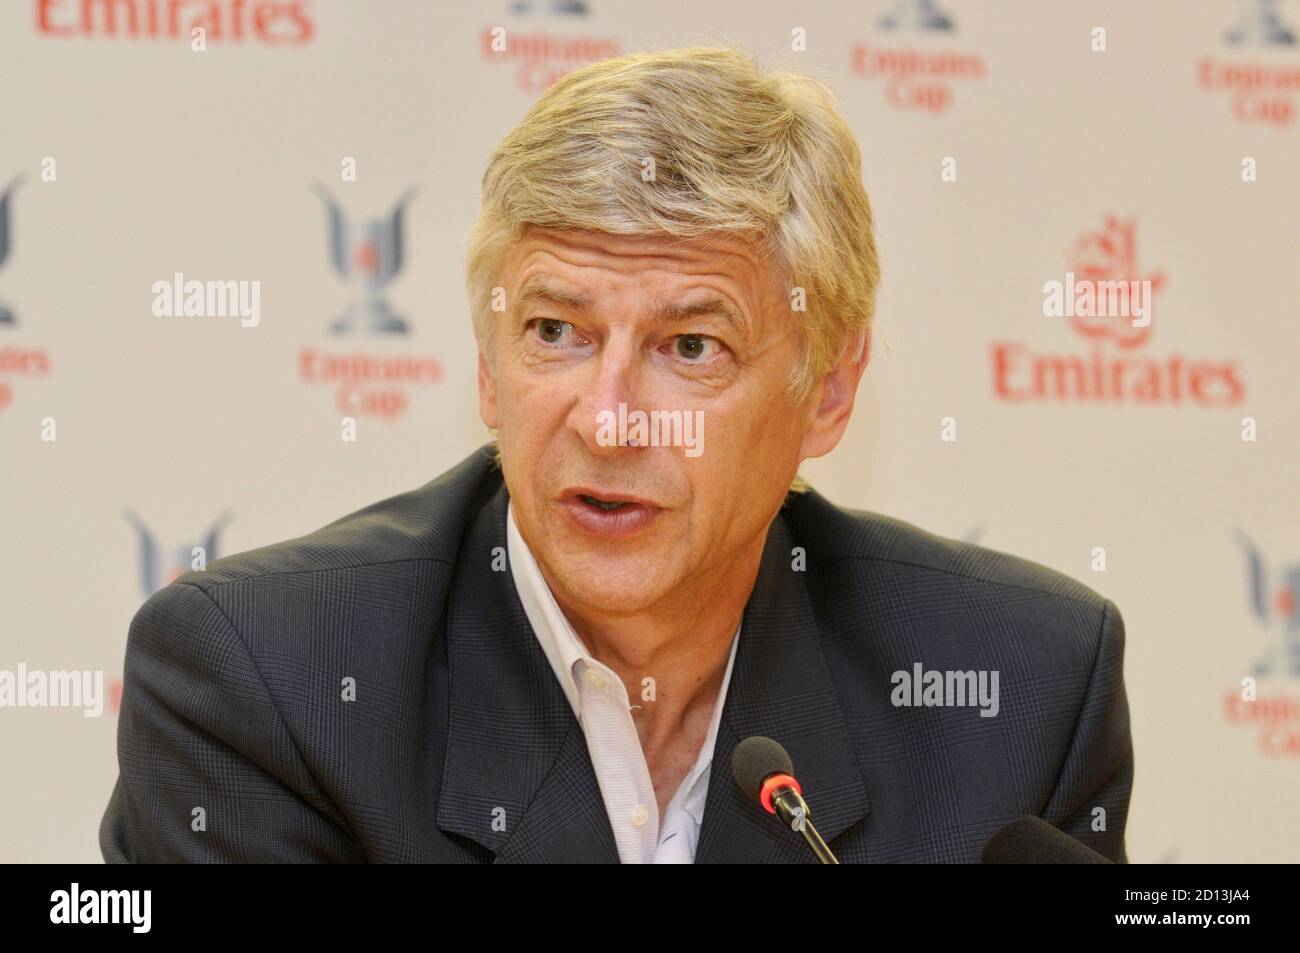 Arsene Wenger, Conférence des médias pour la coupe Emirates, Emirates Stadium, Londres. ROYAUME-UNI Banque D'Images